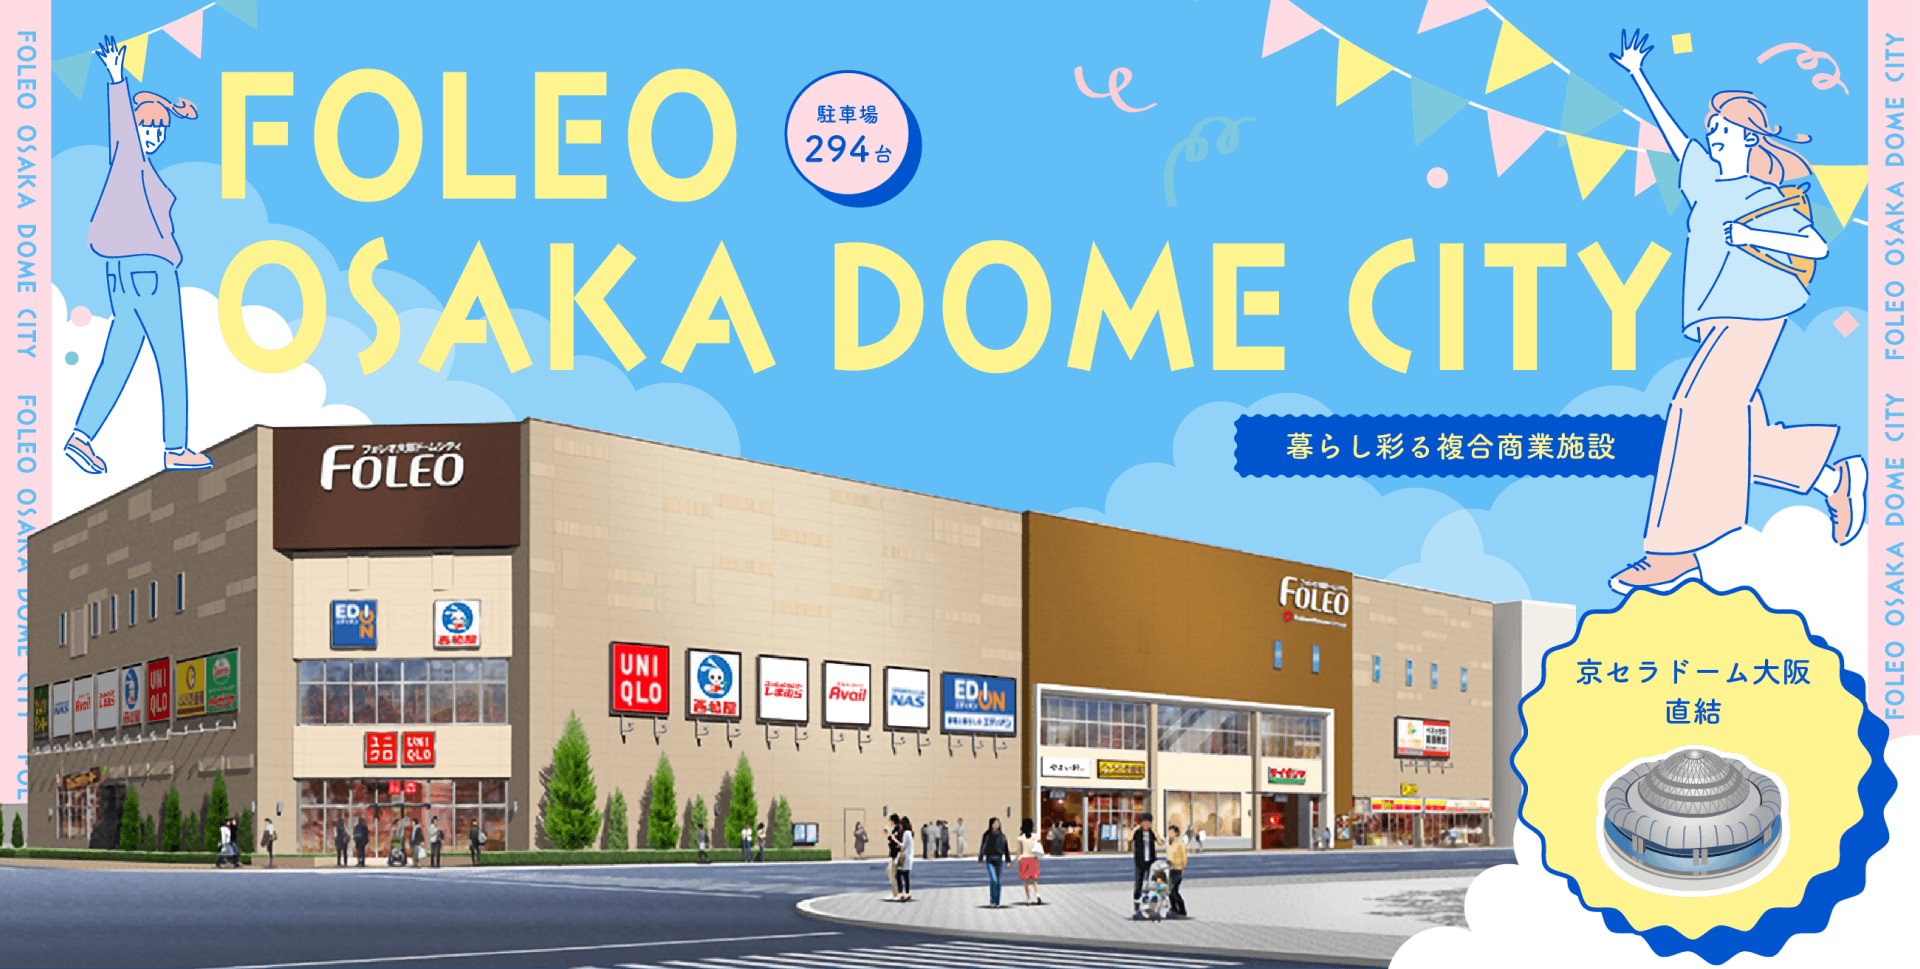 暮らし彩る複合商業施設 フォレオ大阪ドームシティ